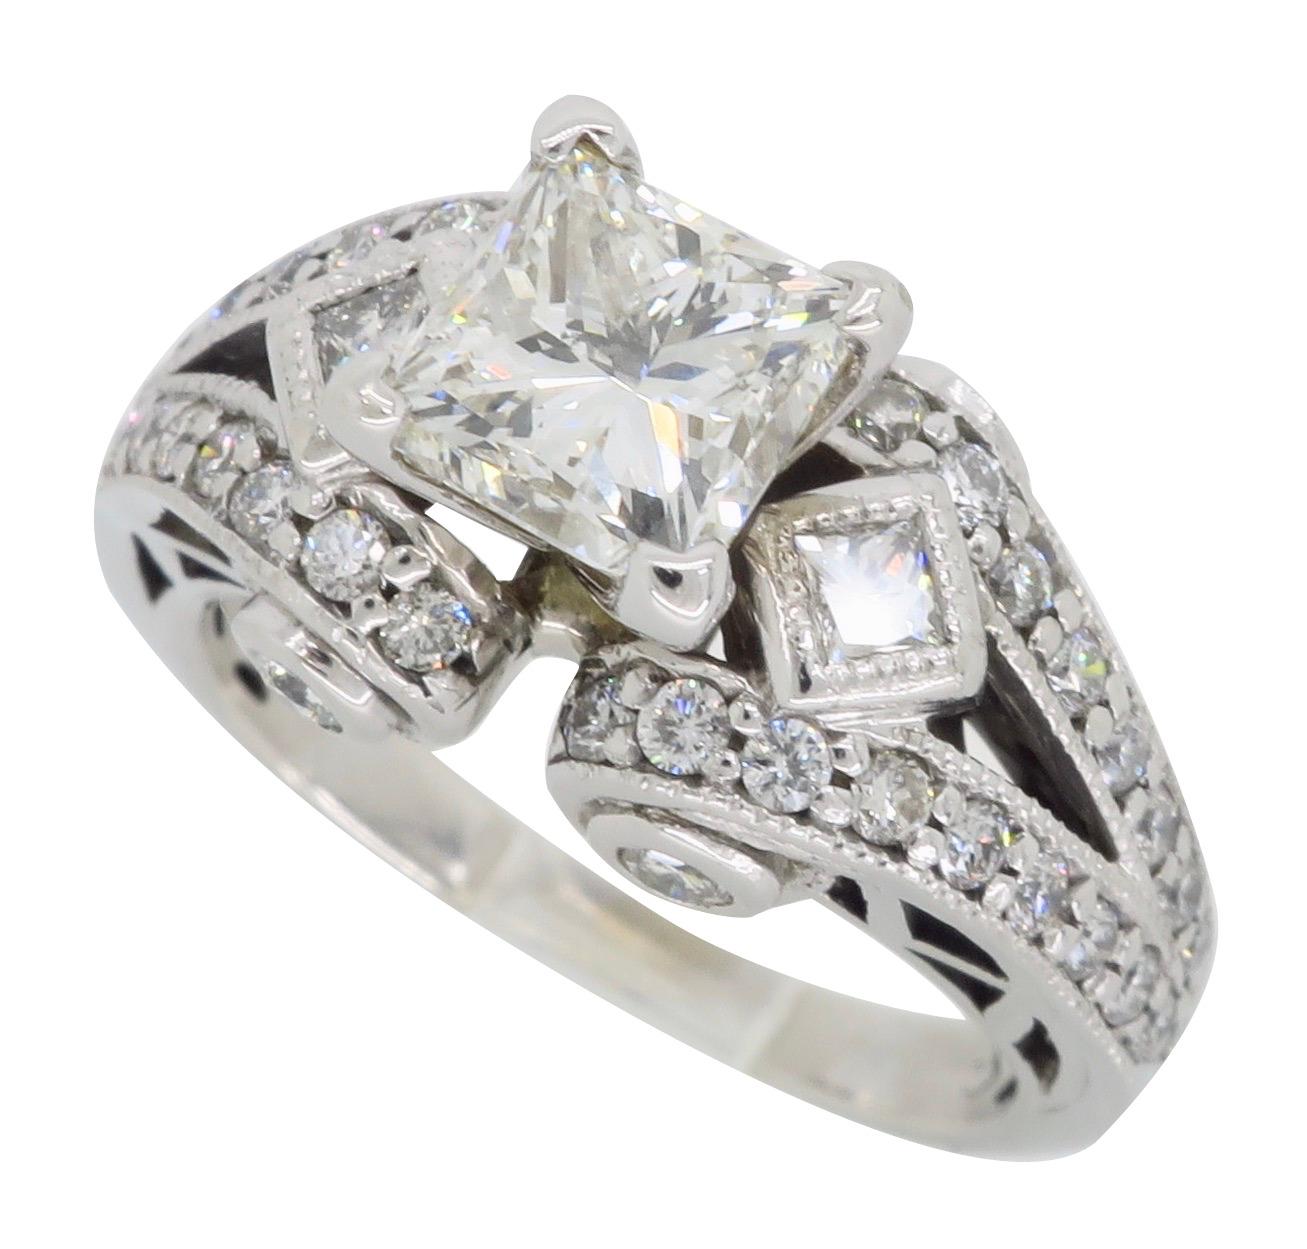 18 Karat White Gold 2.32 Carat Princess Cut Diamond Engagement Ring 6